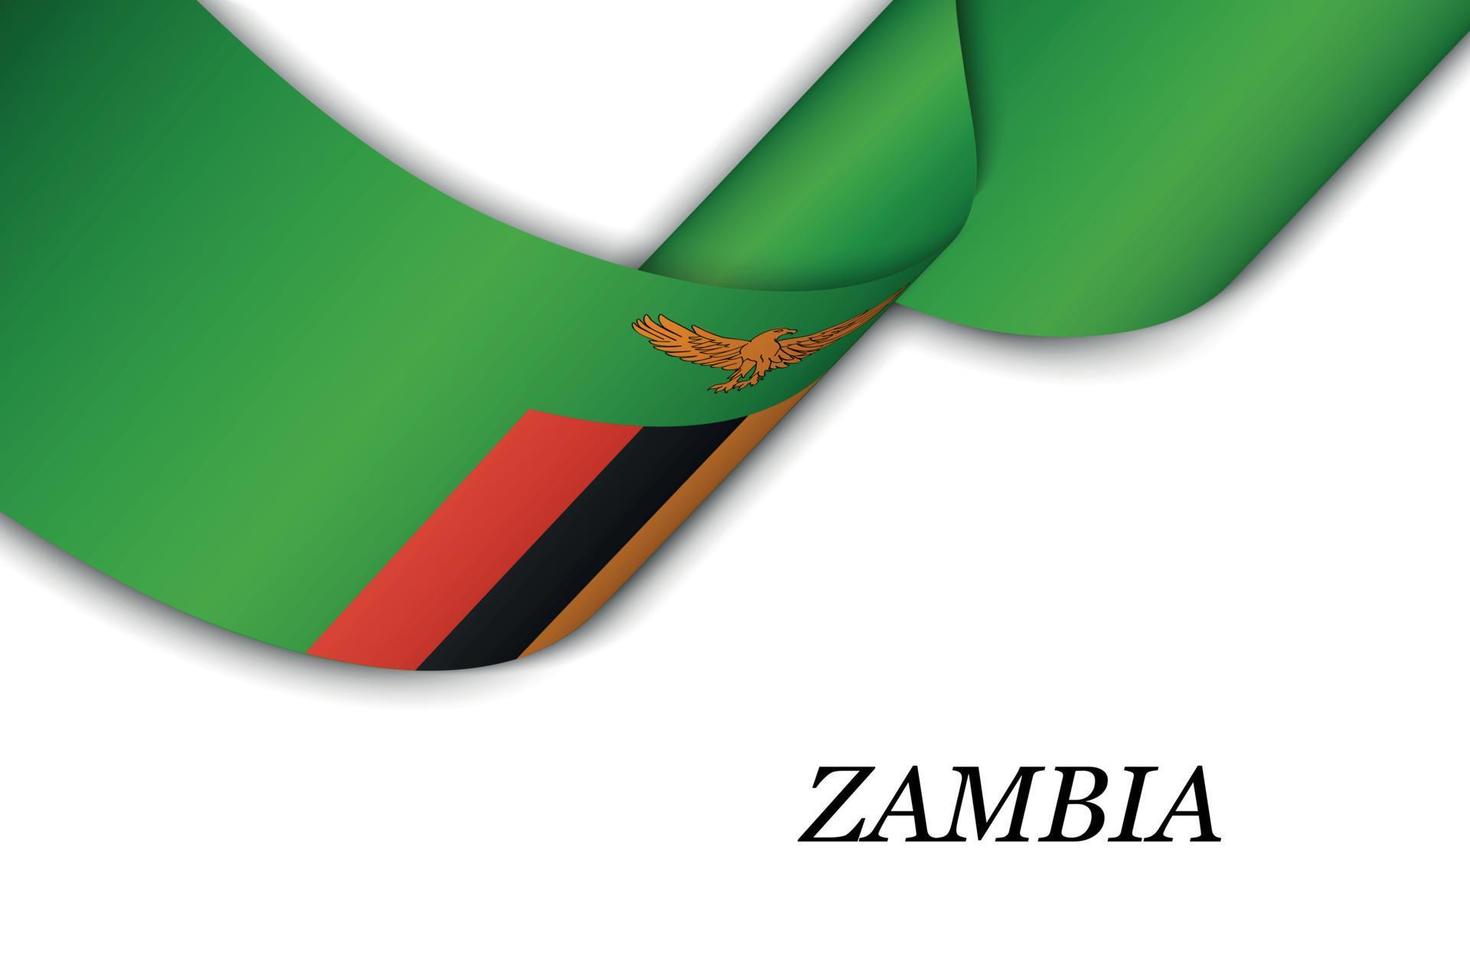 acenando a fita ou banner com bandeira da zâmbia. vetor